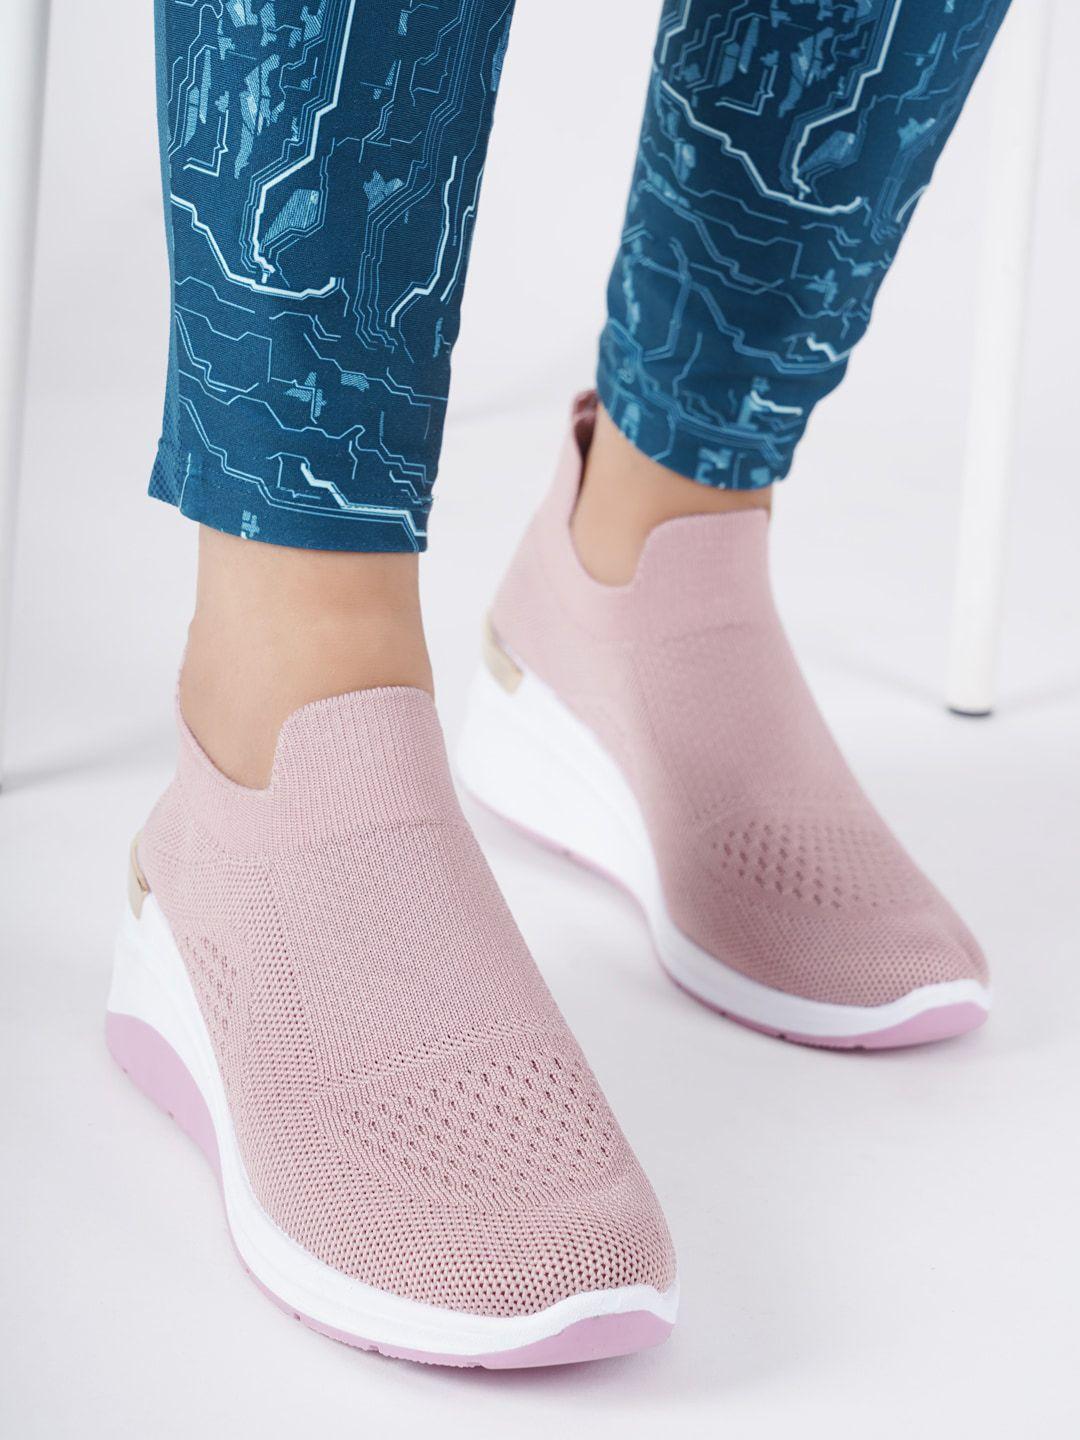 carlton london sports women woven design slip-on sneakers